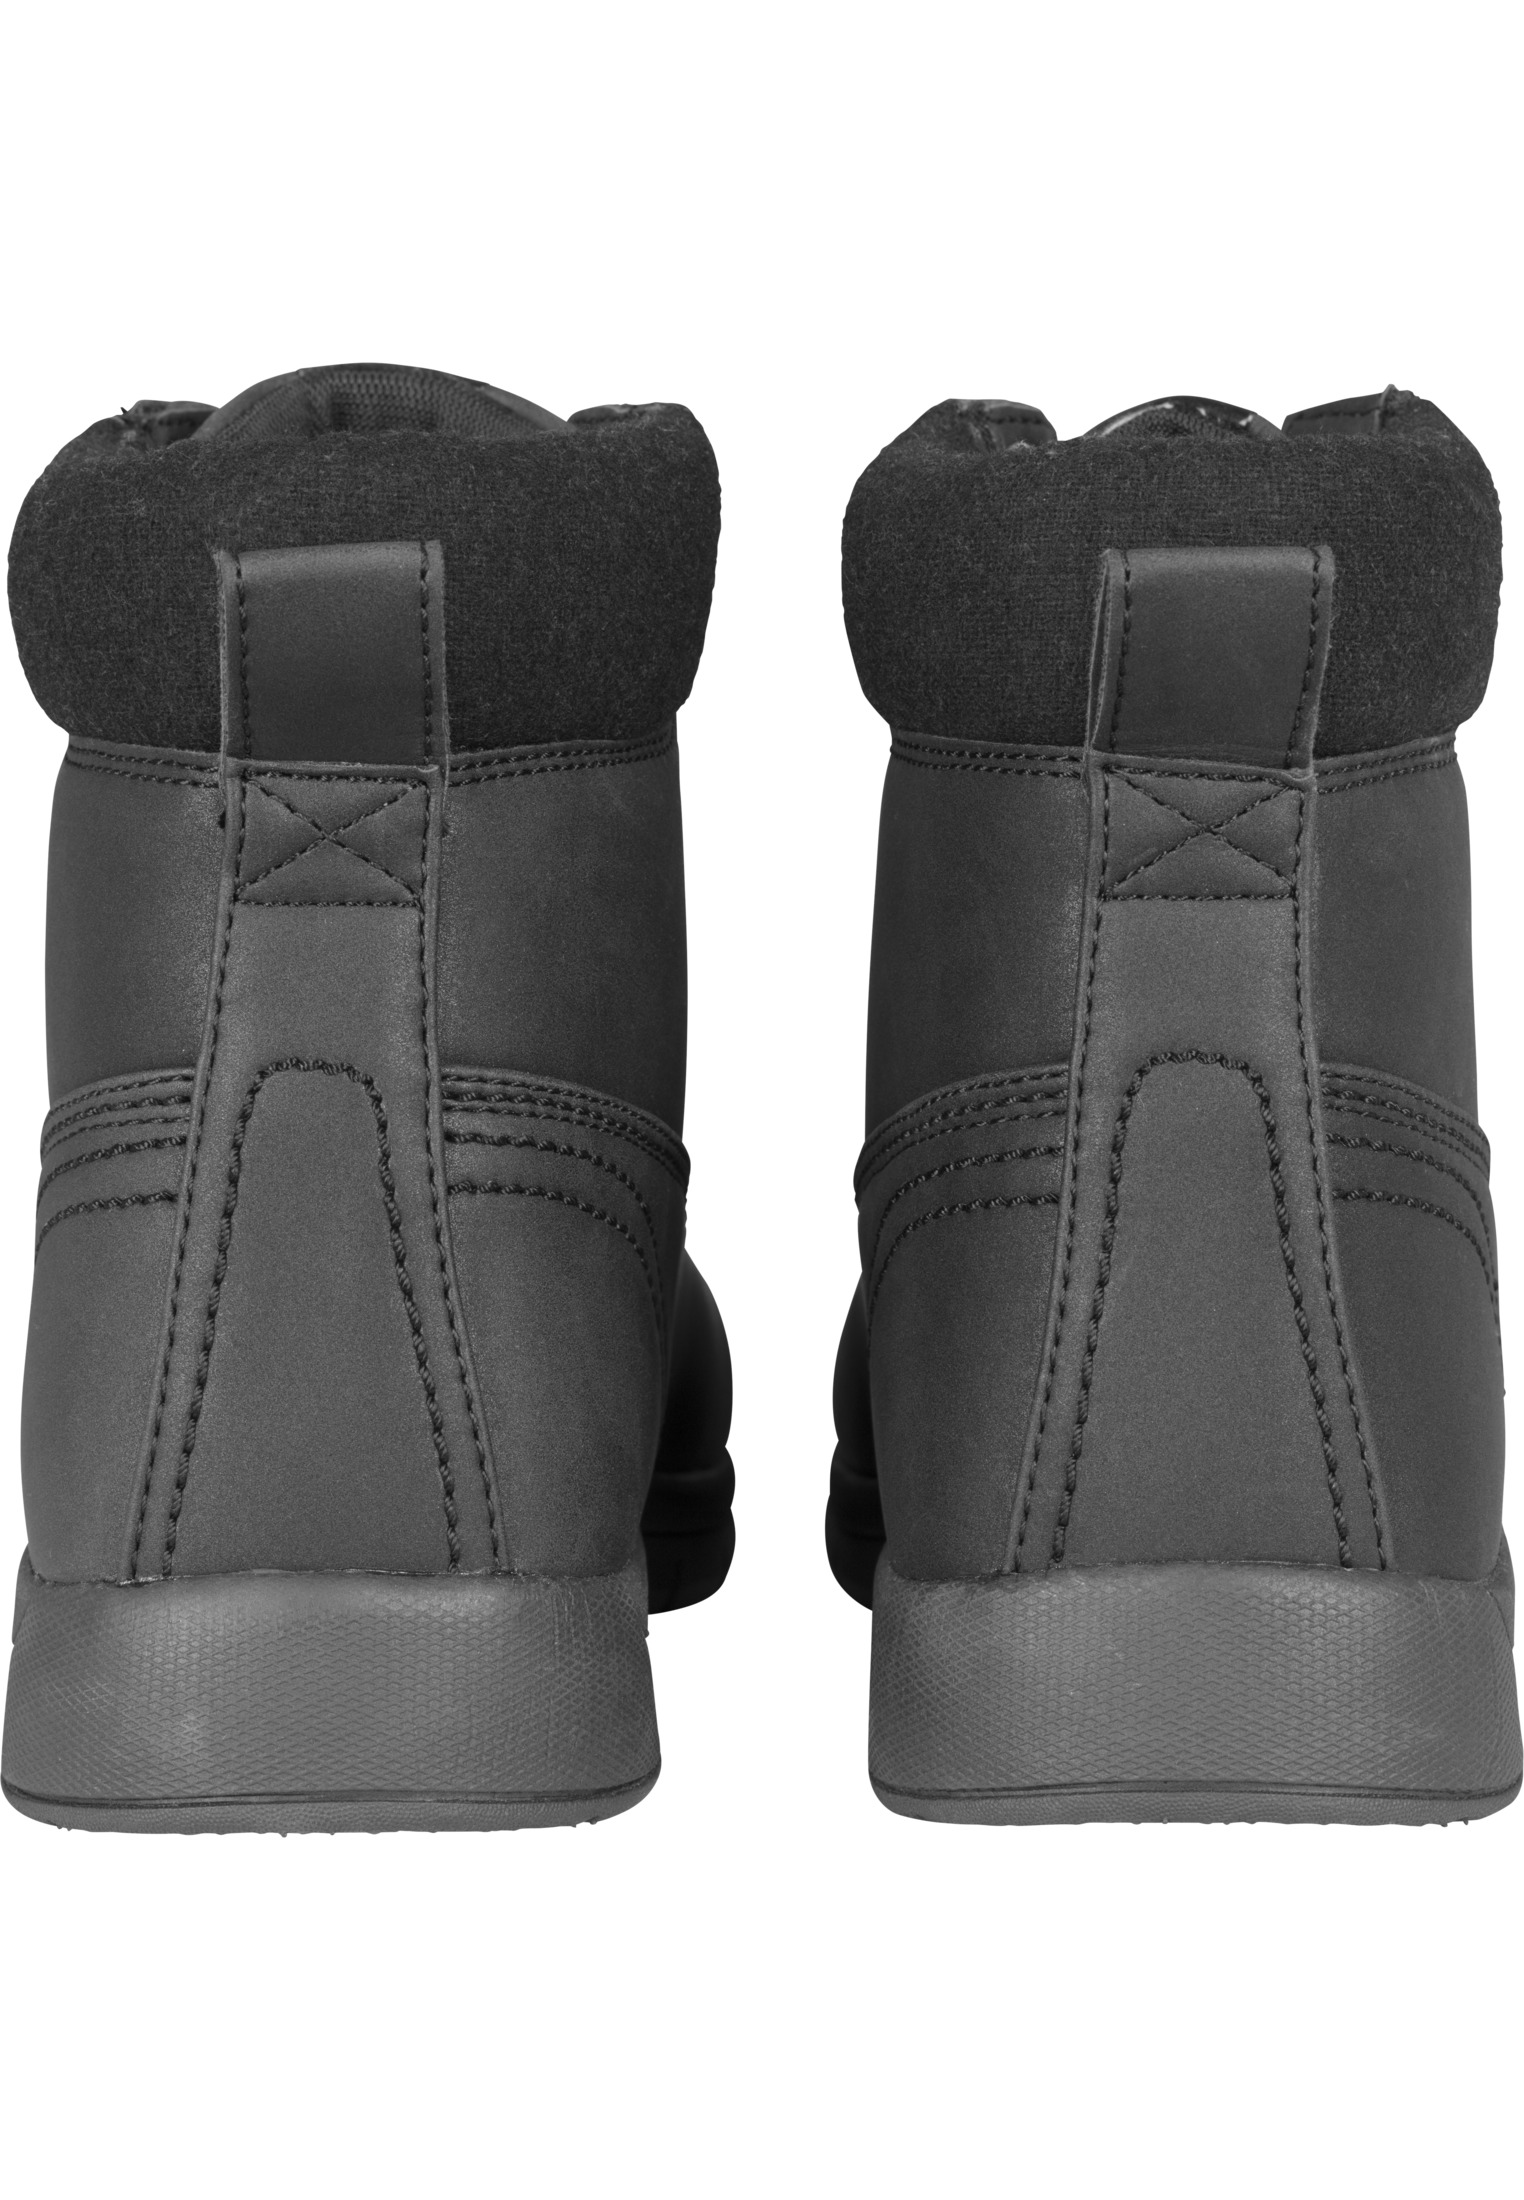 Schuhe Runner Boots in Farbe black/black/black